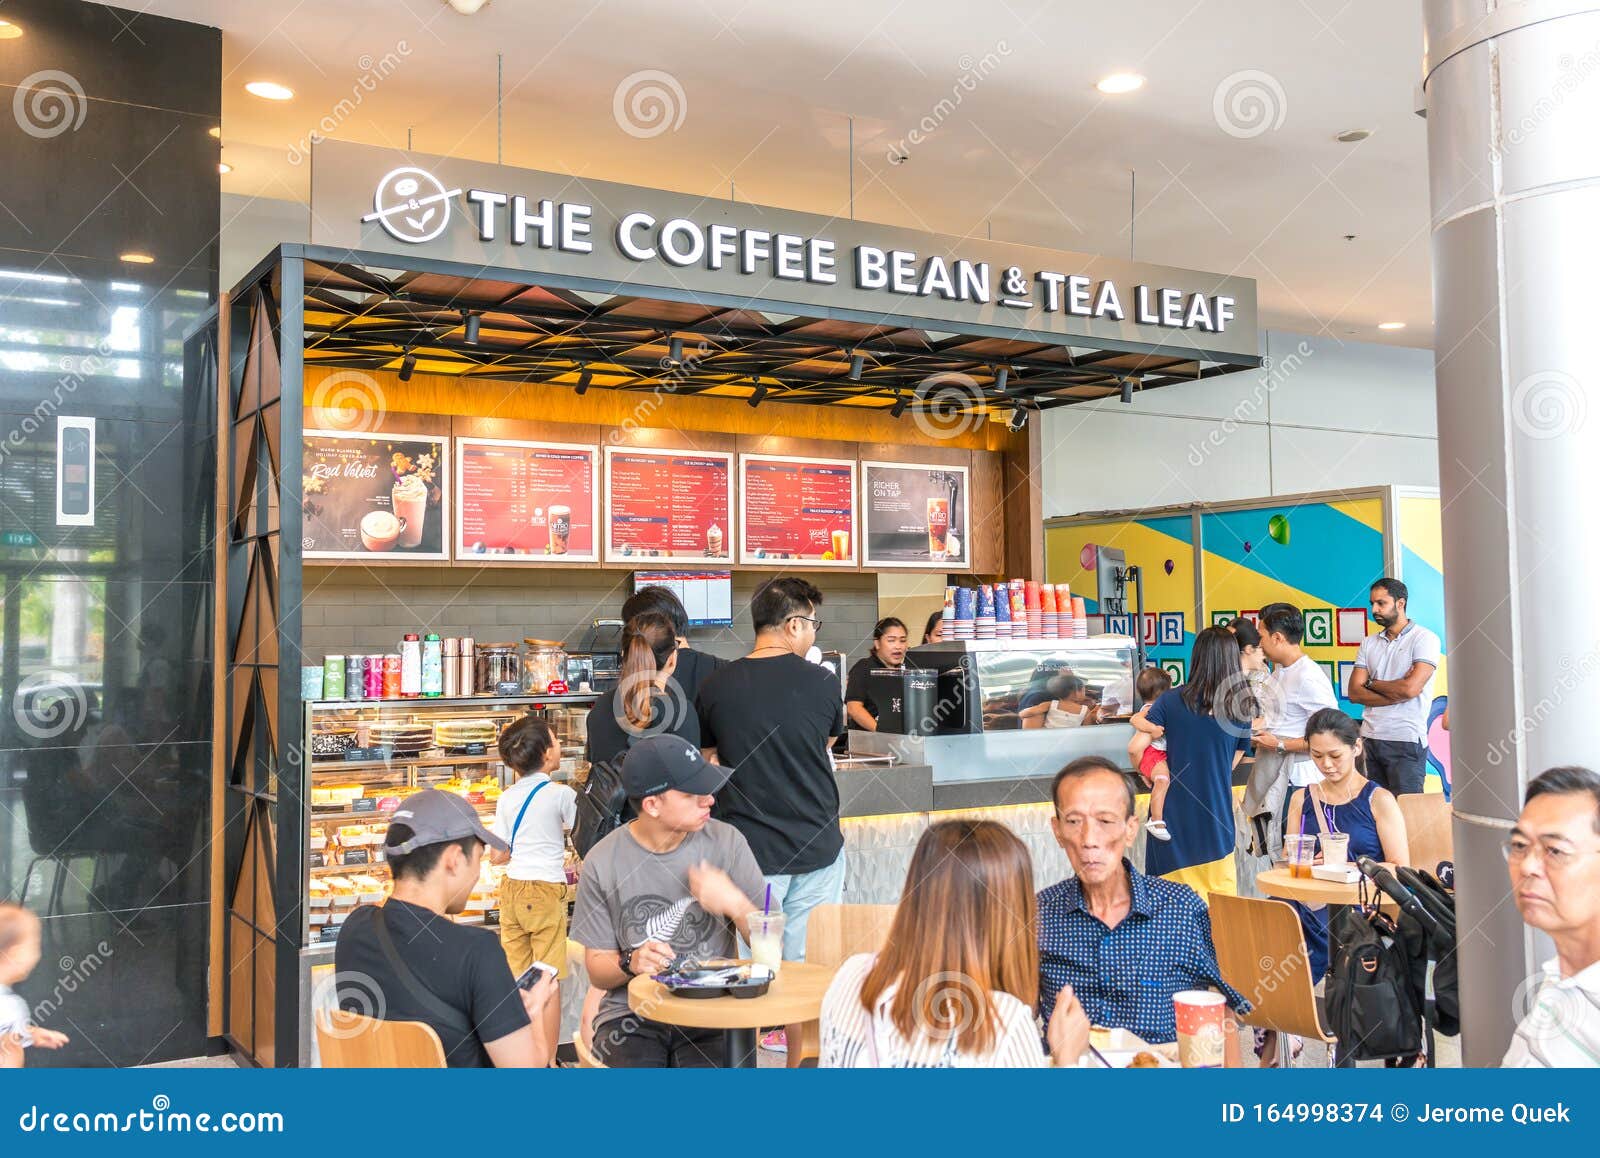 Asia / Singapore Nov 23, 2019 The Coffee Bean & Tea Leaf CBTL